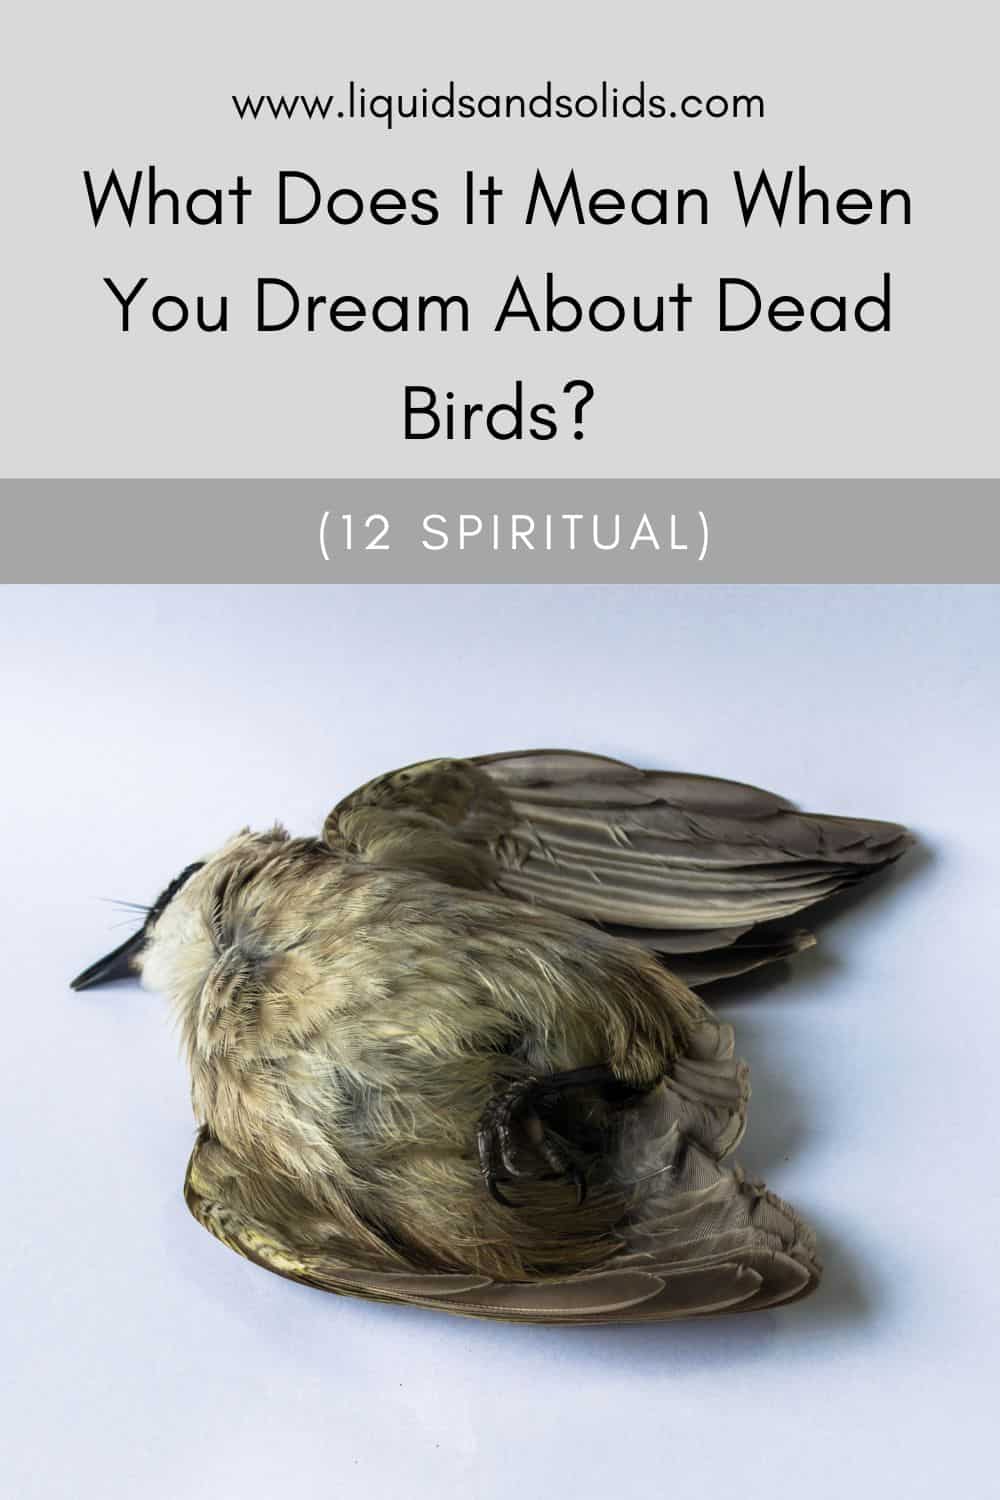  სიზმარი მკვდარი ჩიტების შესახებ (12 სულიერი მნიშვნელობა)